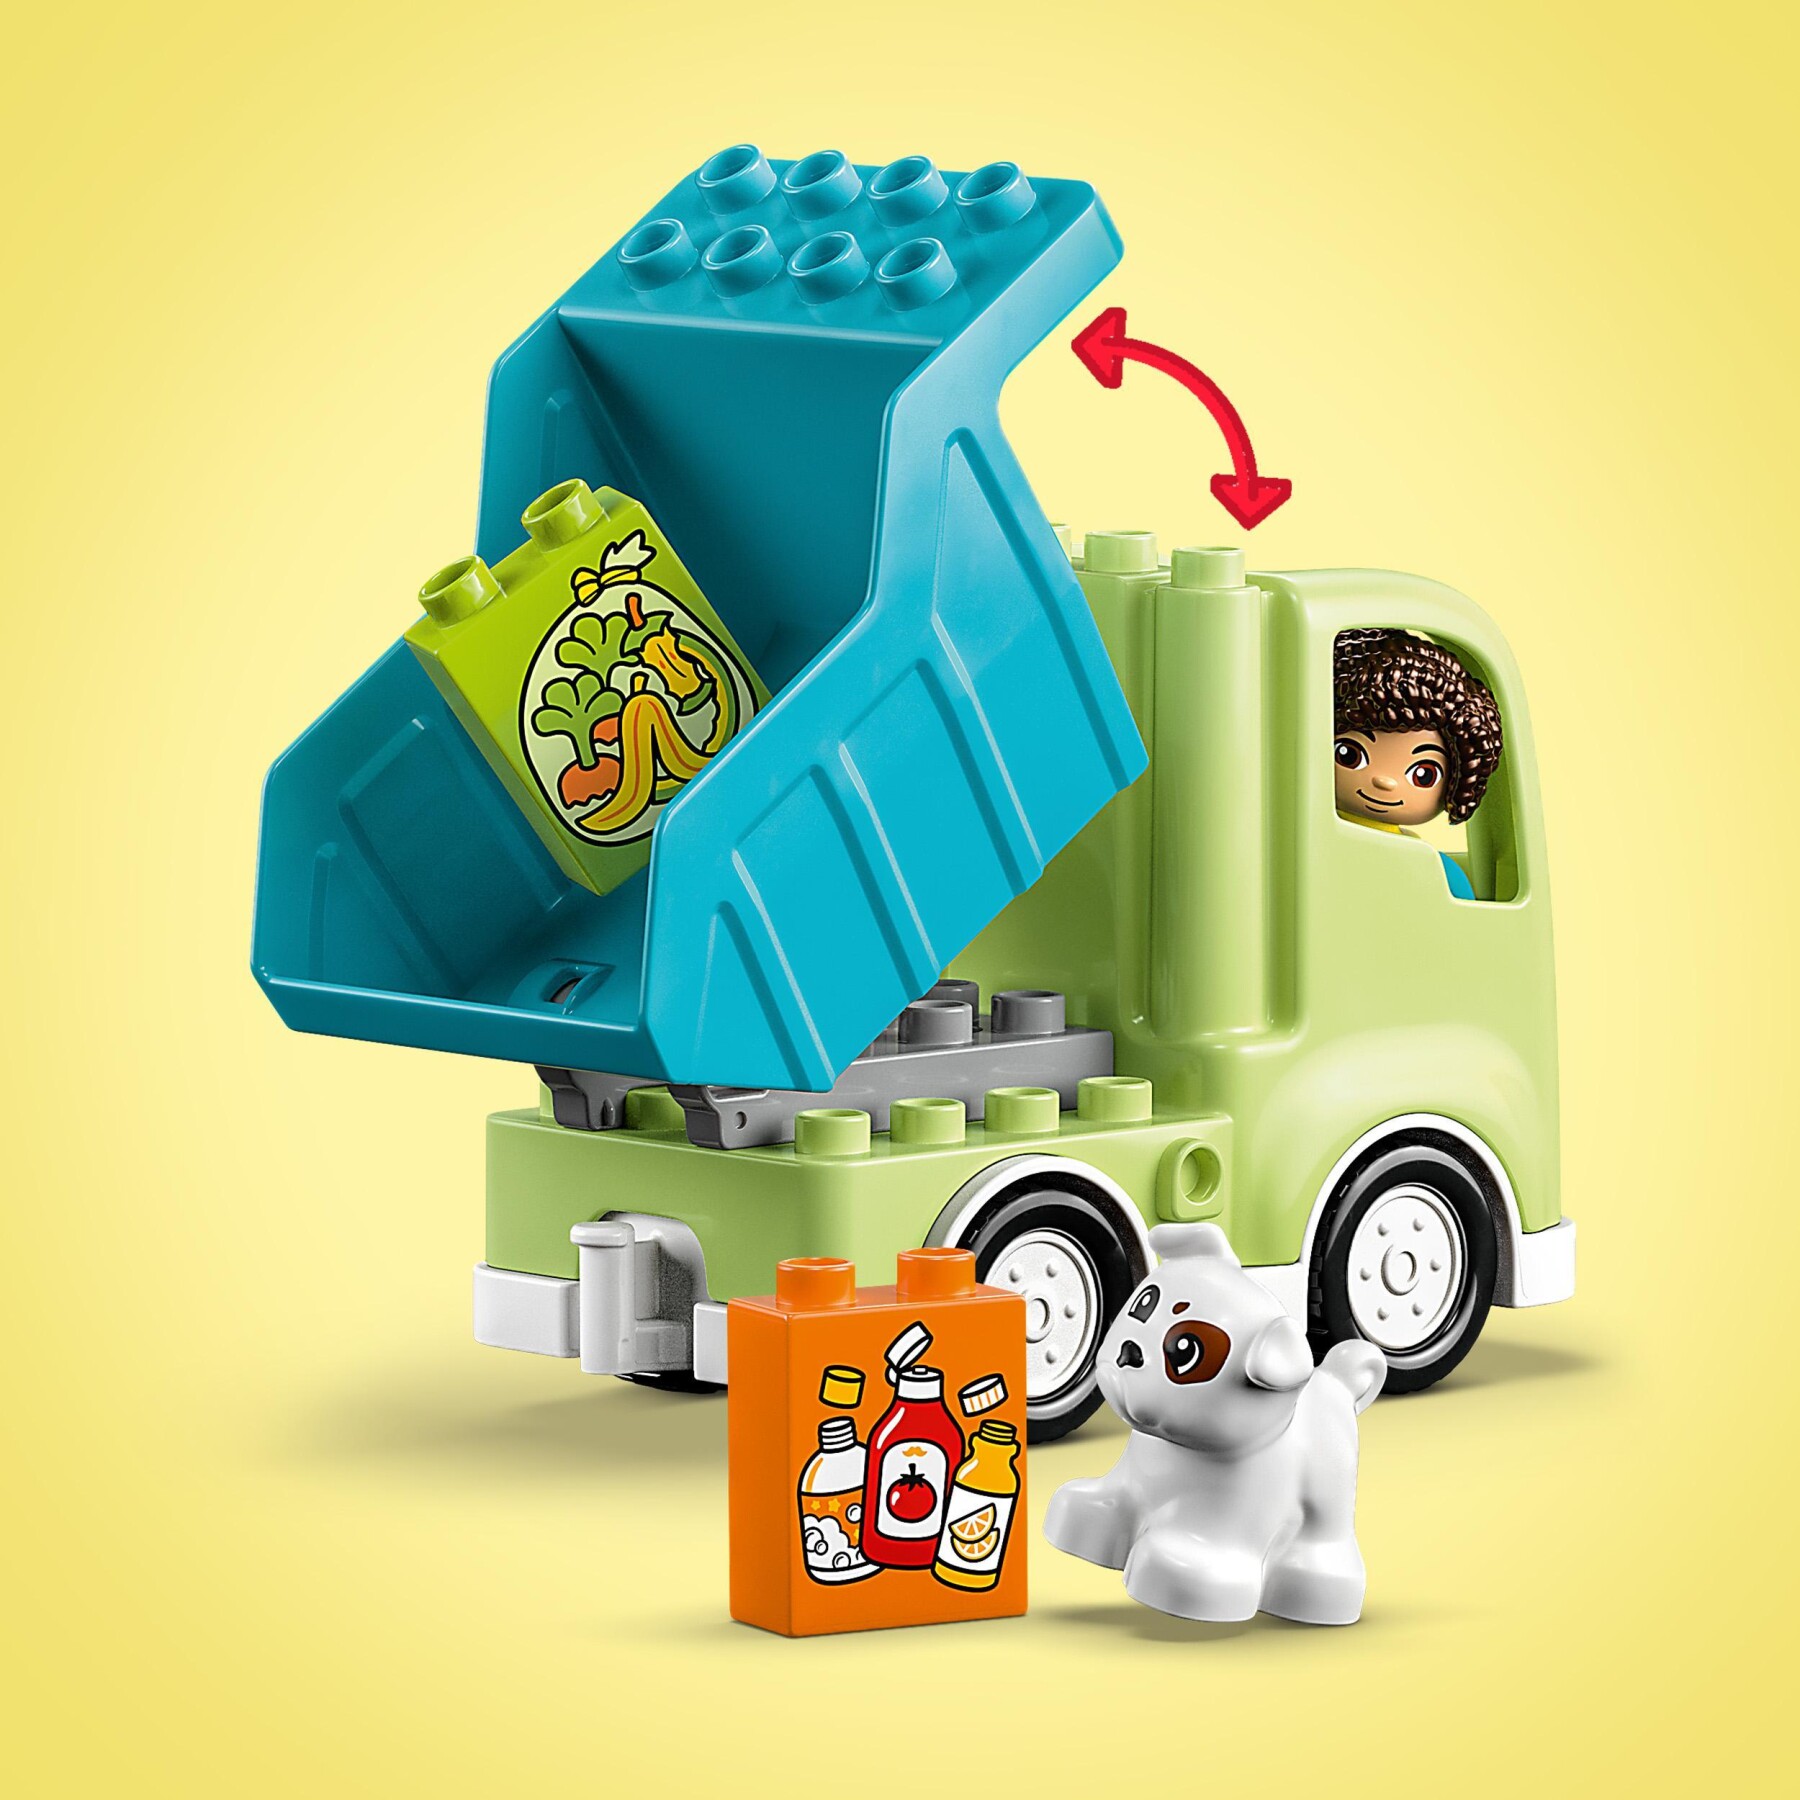 Lego duplo 10987 camion riciclaggio rifiuti, camion spazzatura giocattolo, gioco educativo per bambini, raccolta differenziata - LEGO DUPLO